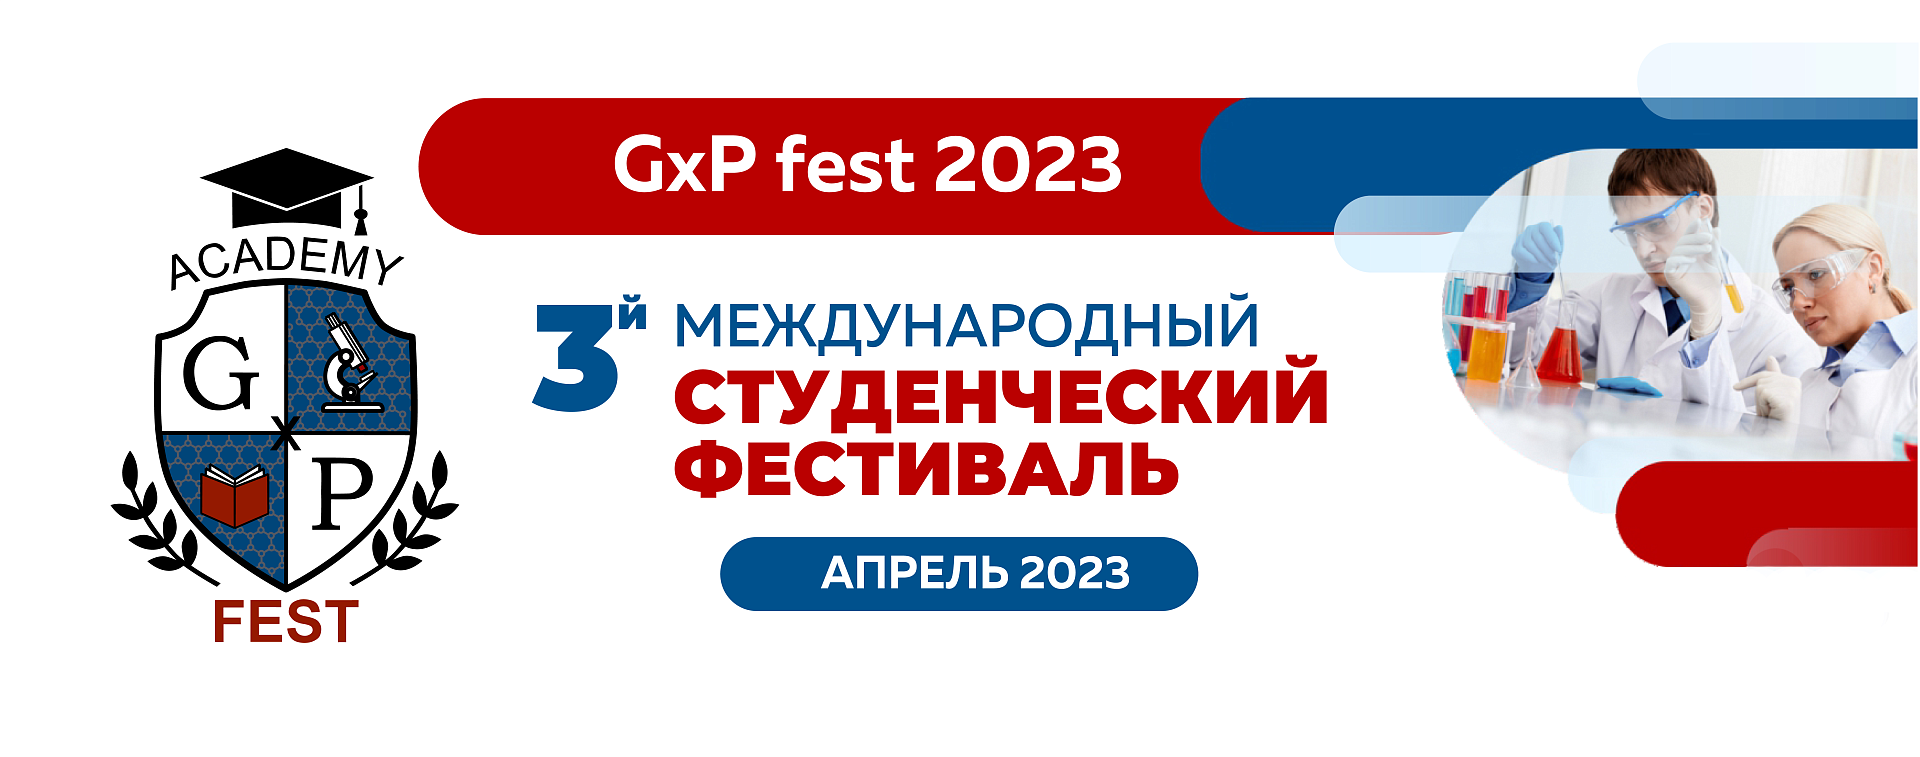 Программа финального этапа 21.04.2023 (онлайн формат)